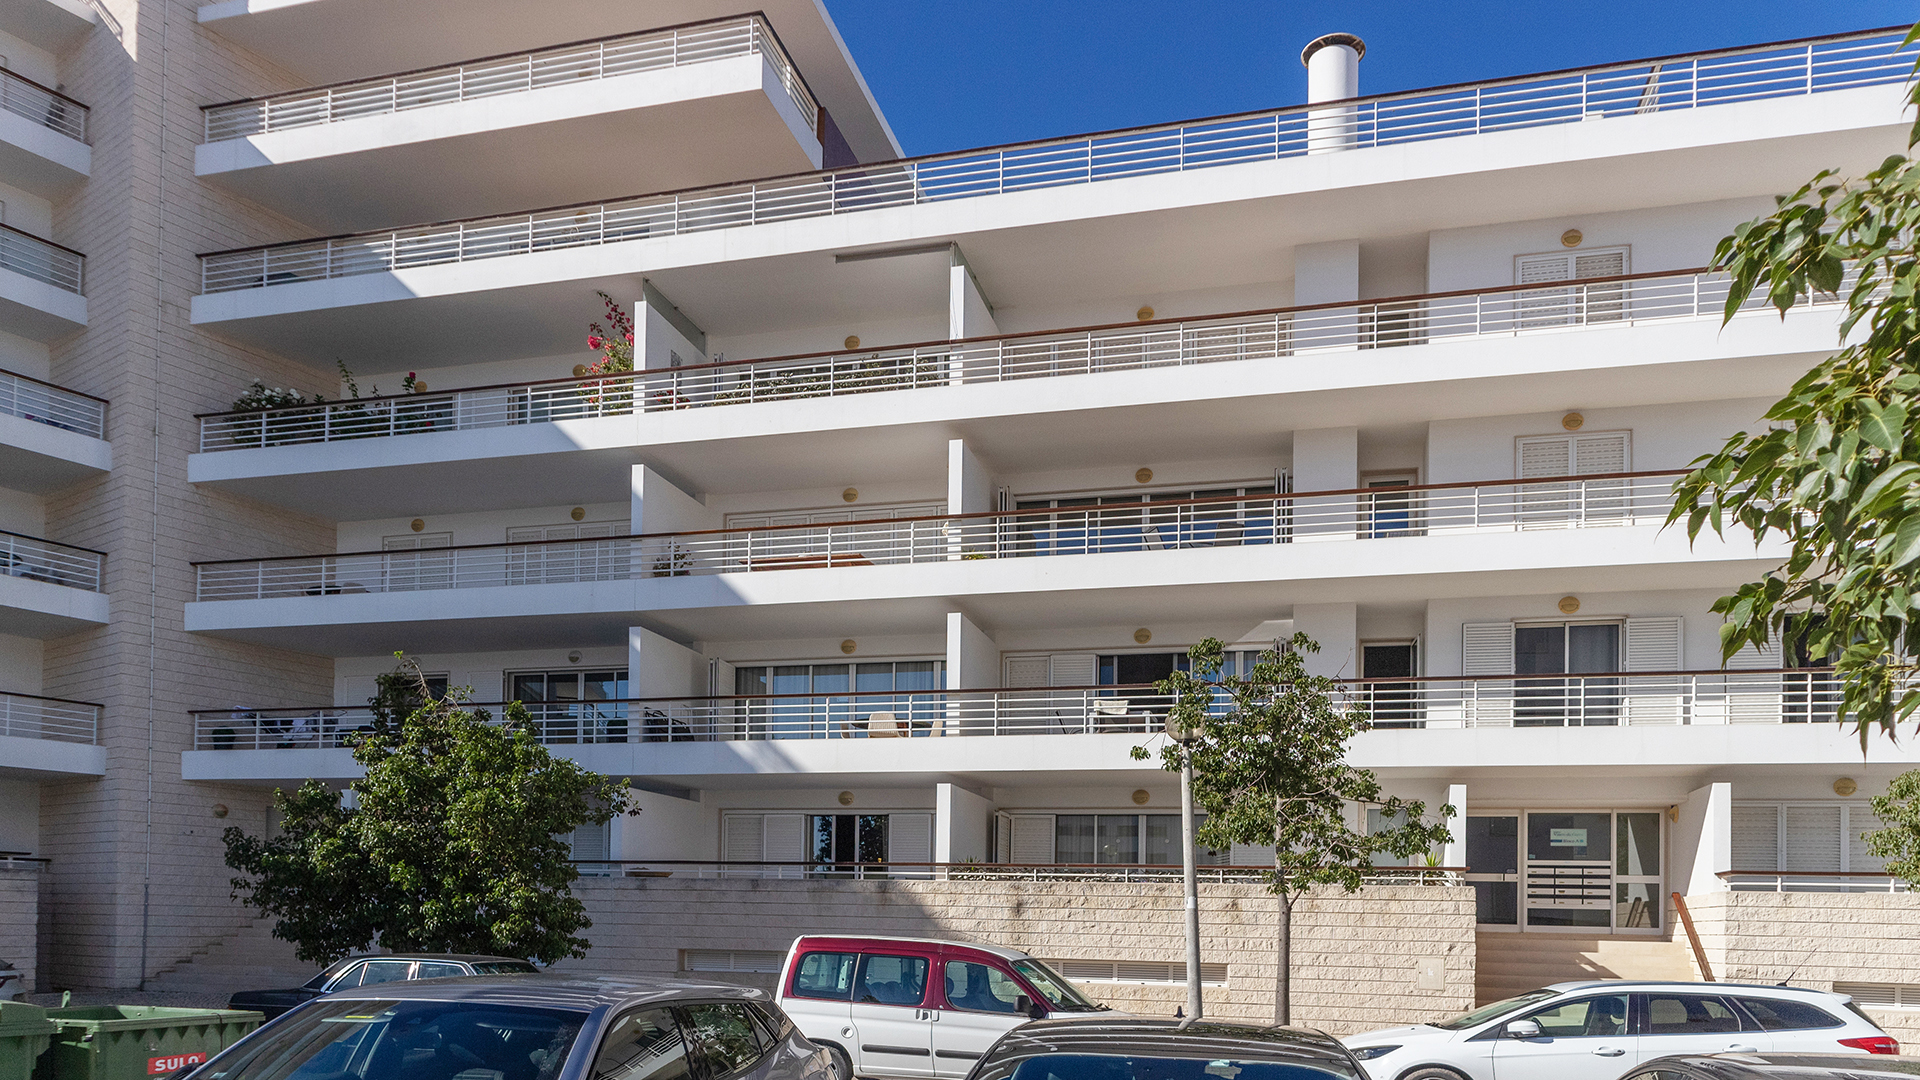 Geräumiges 2 SZ Apartment in der Marina von Lagos, West Algarve | LG2197 Dieses Apartment mit 2 Schlafzimmern und grosser Terrasse im ersten Stock ist eine gute Wahl für alle die den Lebensstil der Algarve geniessen möchte. Es liegt am begehrten Yachthafen von Lagos und bietet eine fantastische Aussicht. Restaurants und Geschäfte, sowie das historische Stadtzentrum von Lagos sind fussläufig erreichbar. 